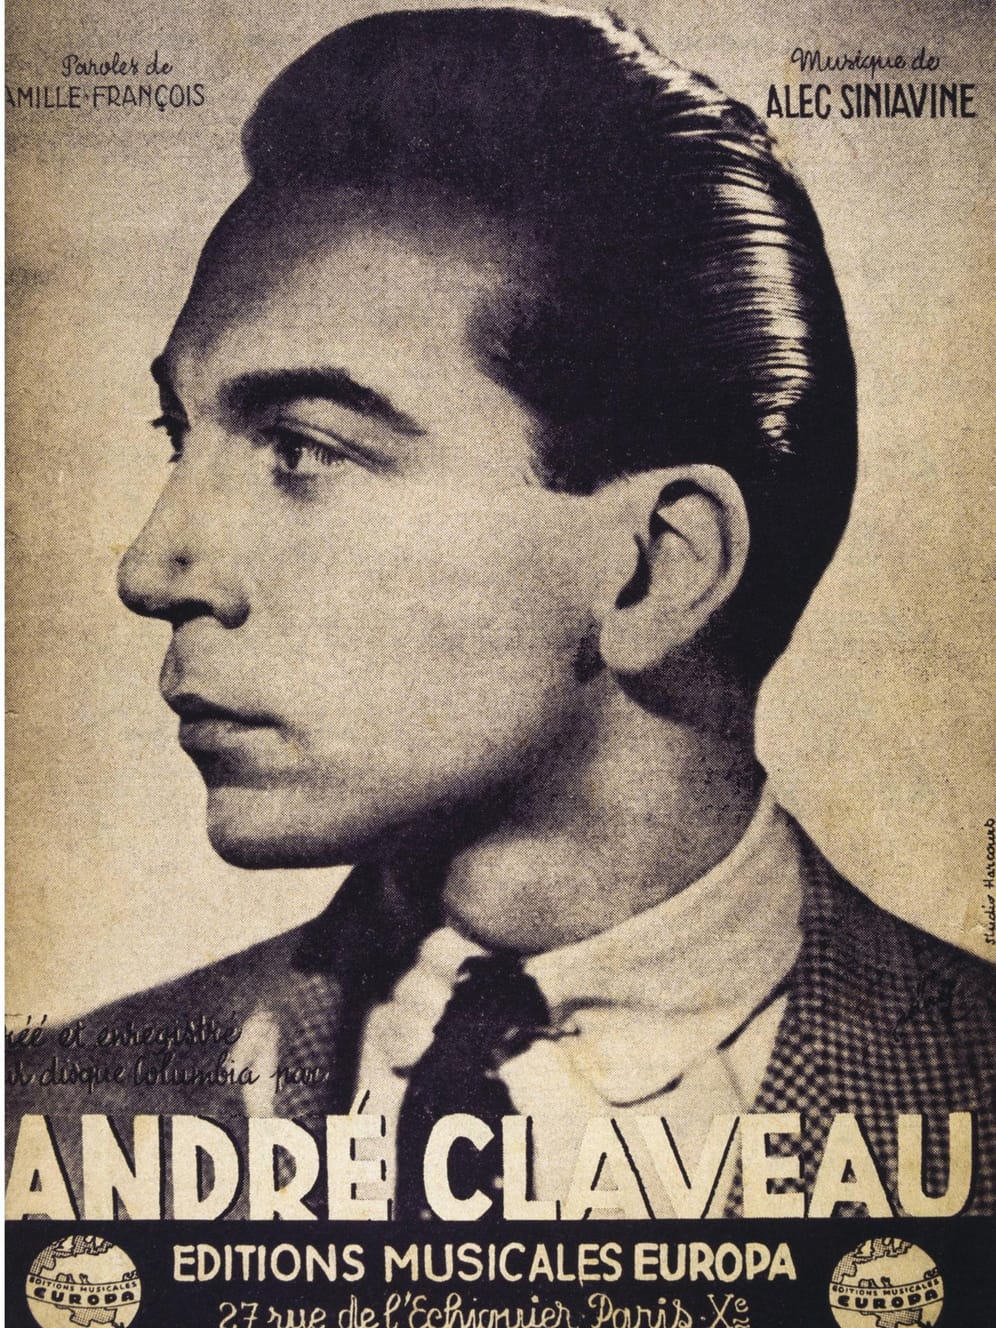 1958: André Claveau gewinnt für Frankreich mit 27 Punkten